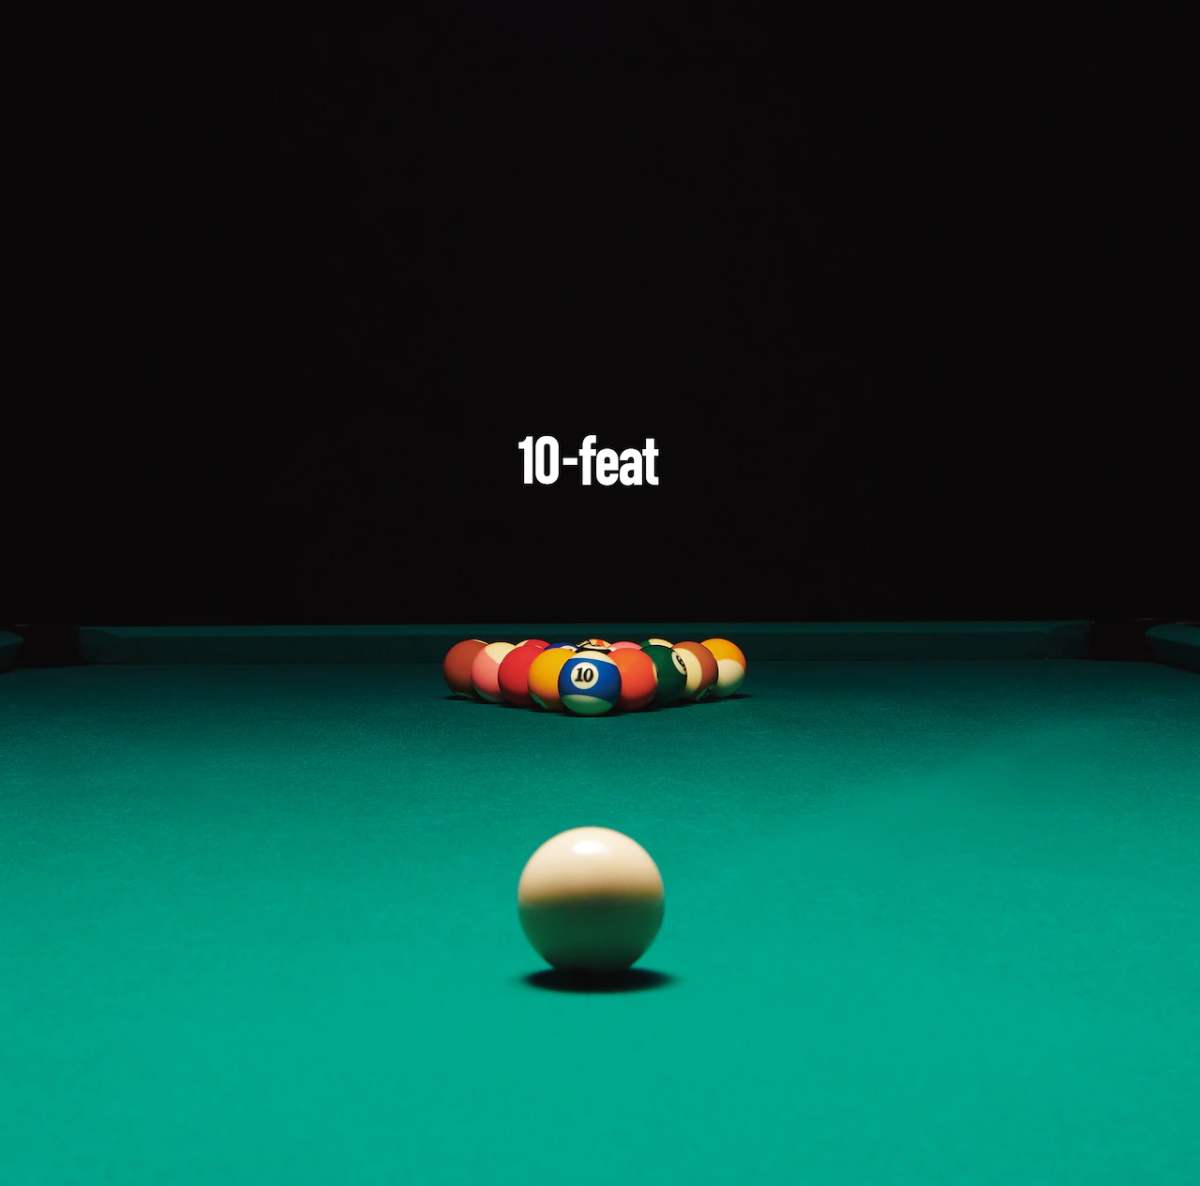 『10-FEET - アンテナラスト feat. G-FREAK FACTORY』収録の『10-feat』ジャケット